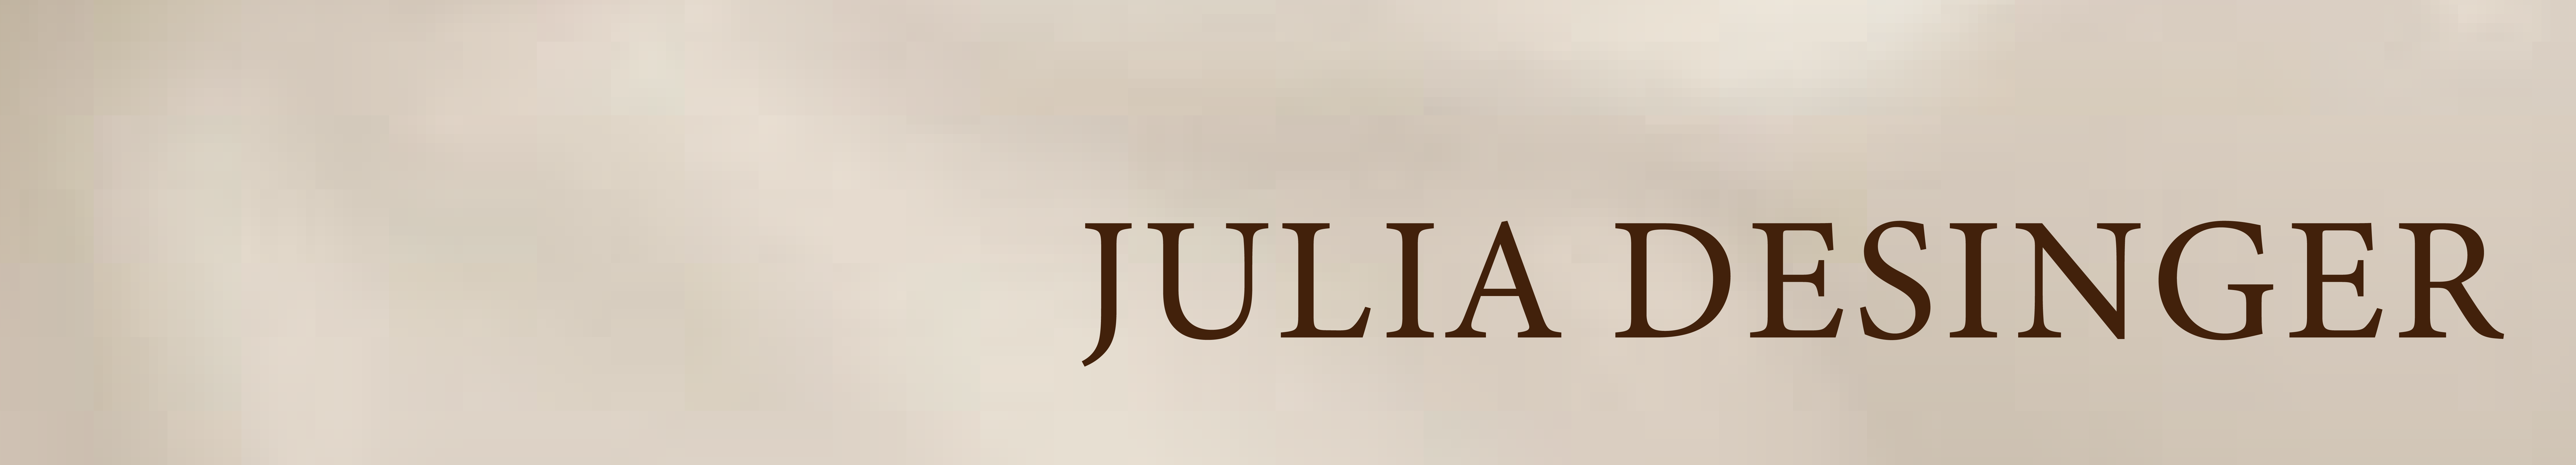 Юлия Главацкая's profile banner